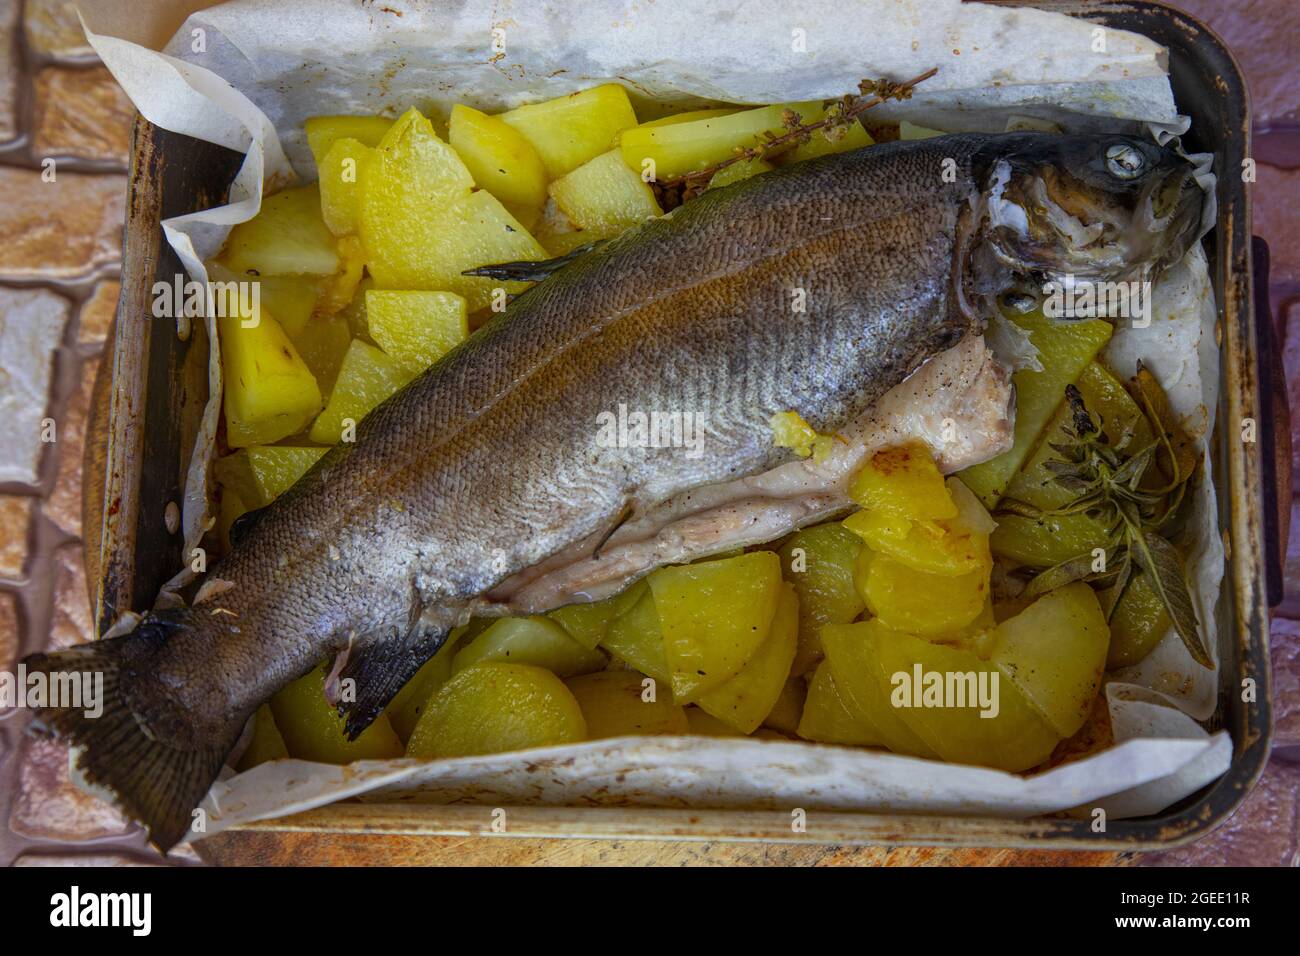 Trucha en el mercado de pescado fotografías e imágenes de alta resolución -  Página 4 - Alamy